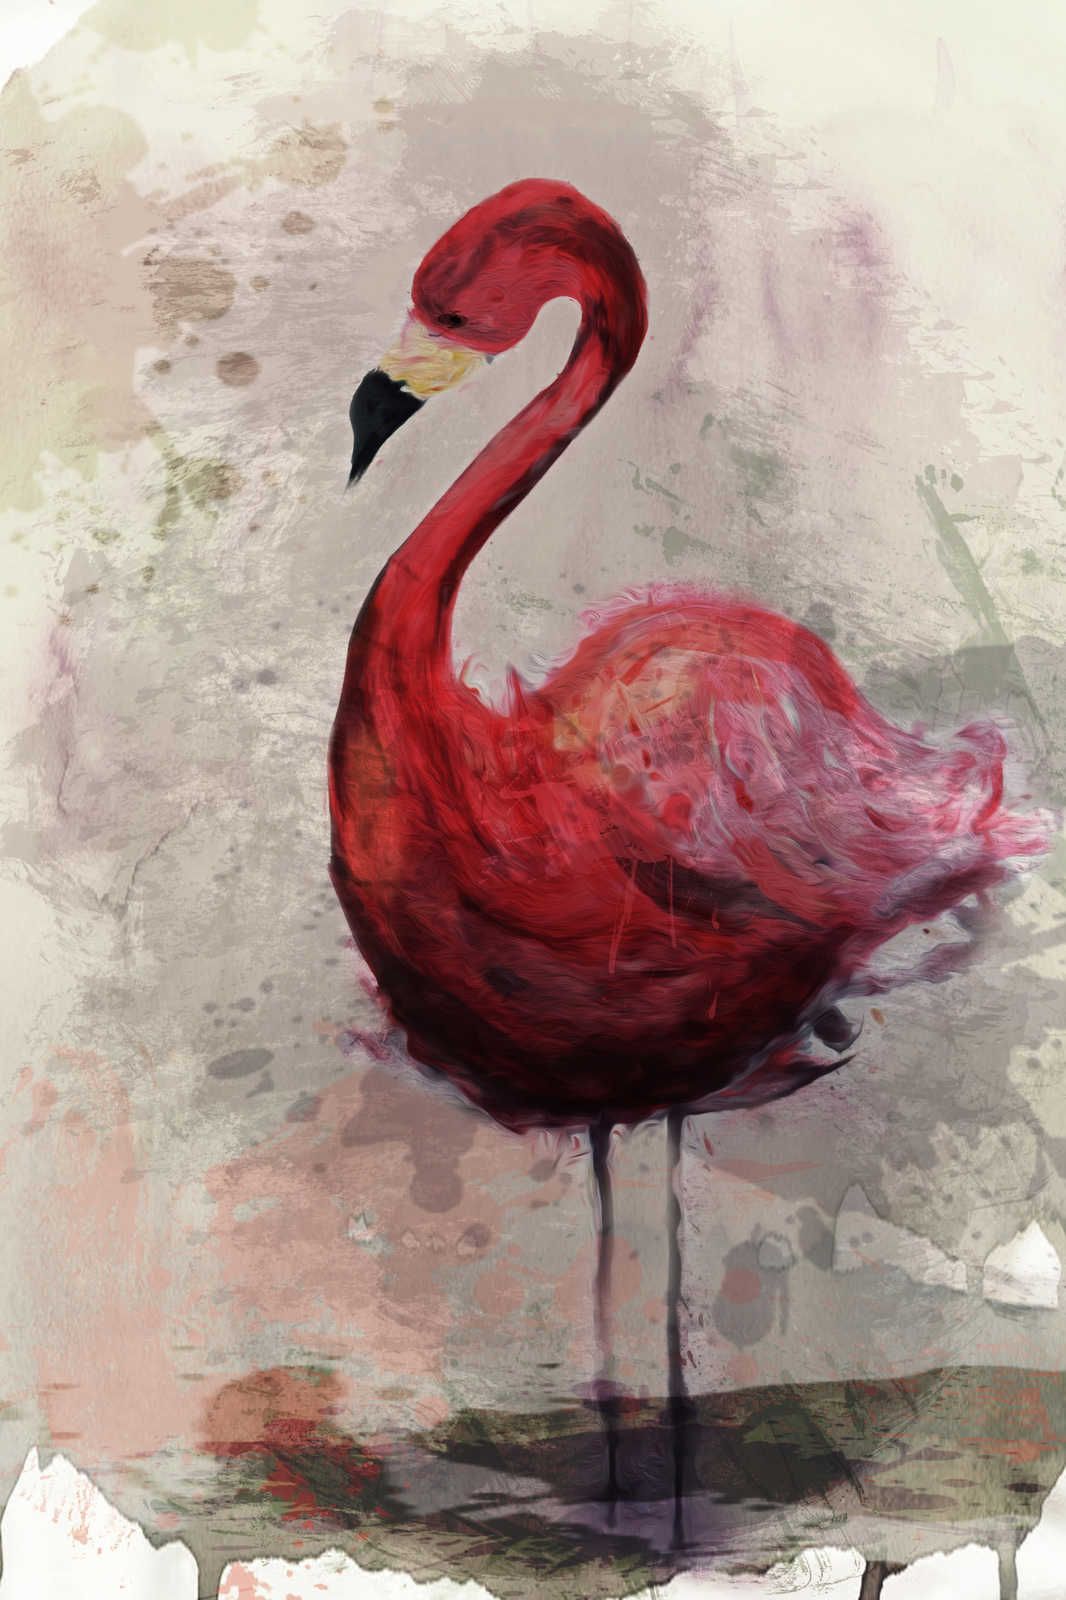             Aquarel Canvas Schilderij met Flamingo Motief in Tekenstijl - 0.90 m x 0.60 m
        